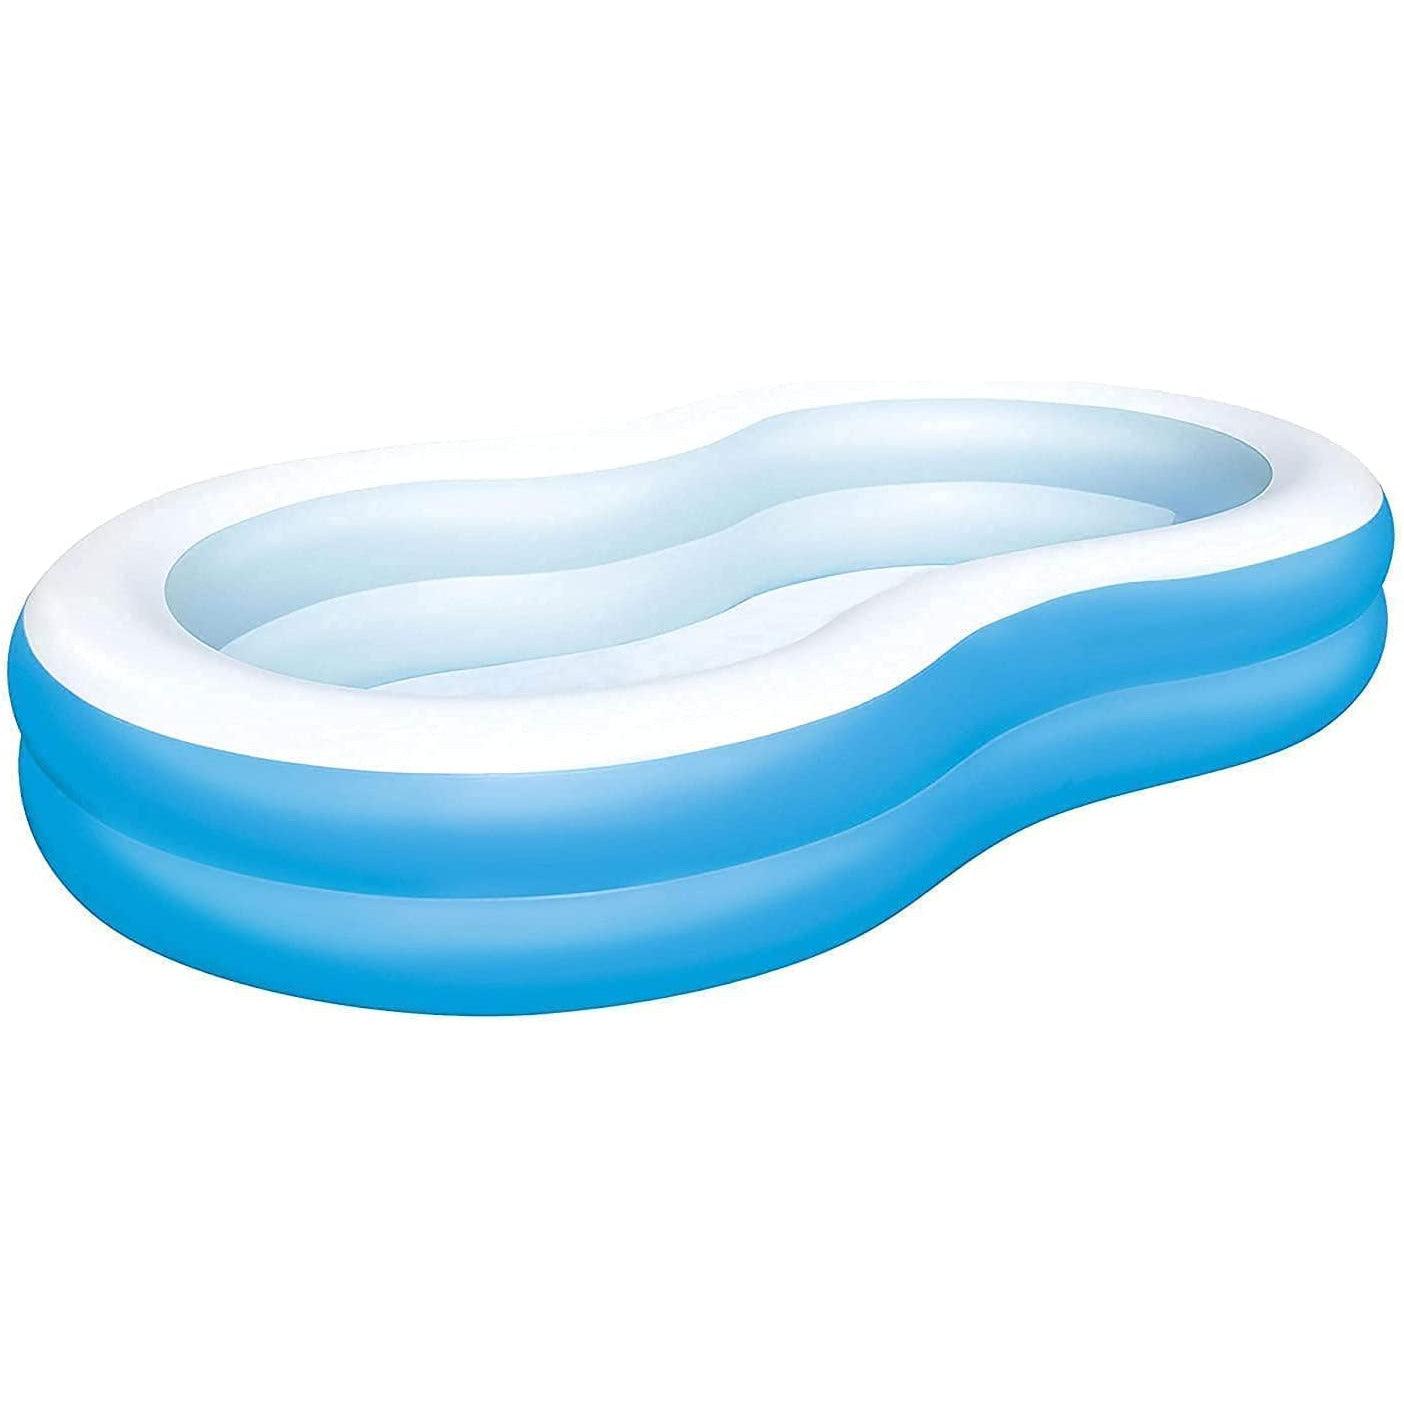 بيست واي 54117 حمام سباحة بيج لاجون فاميلي للأطفال - أزرق